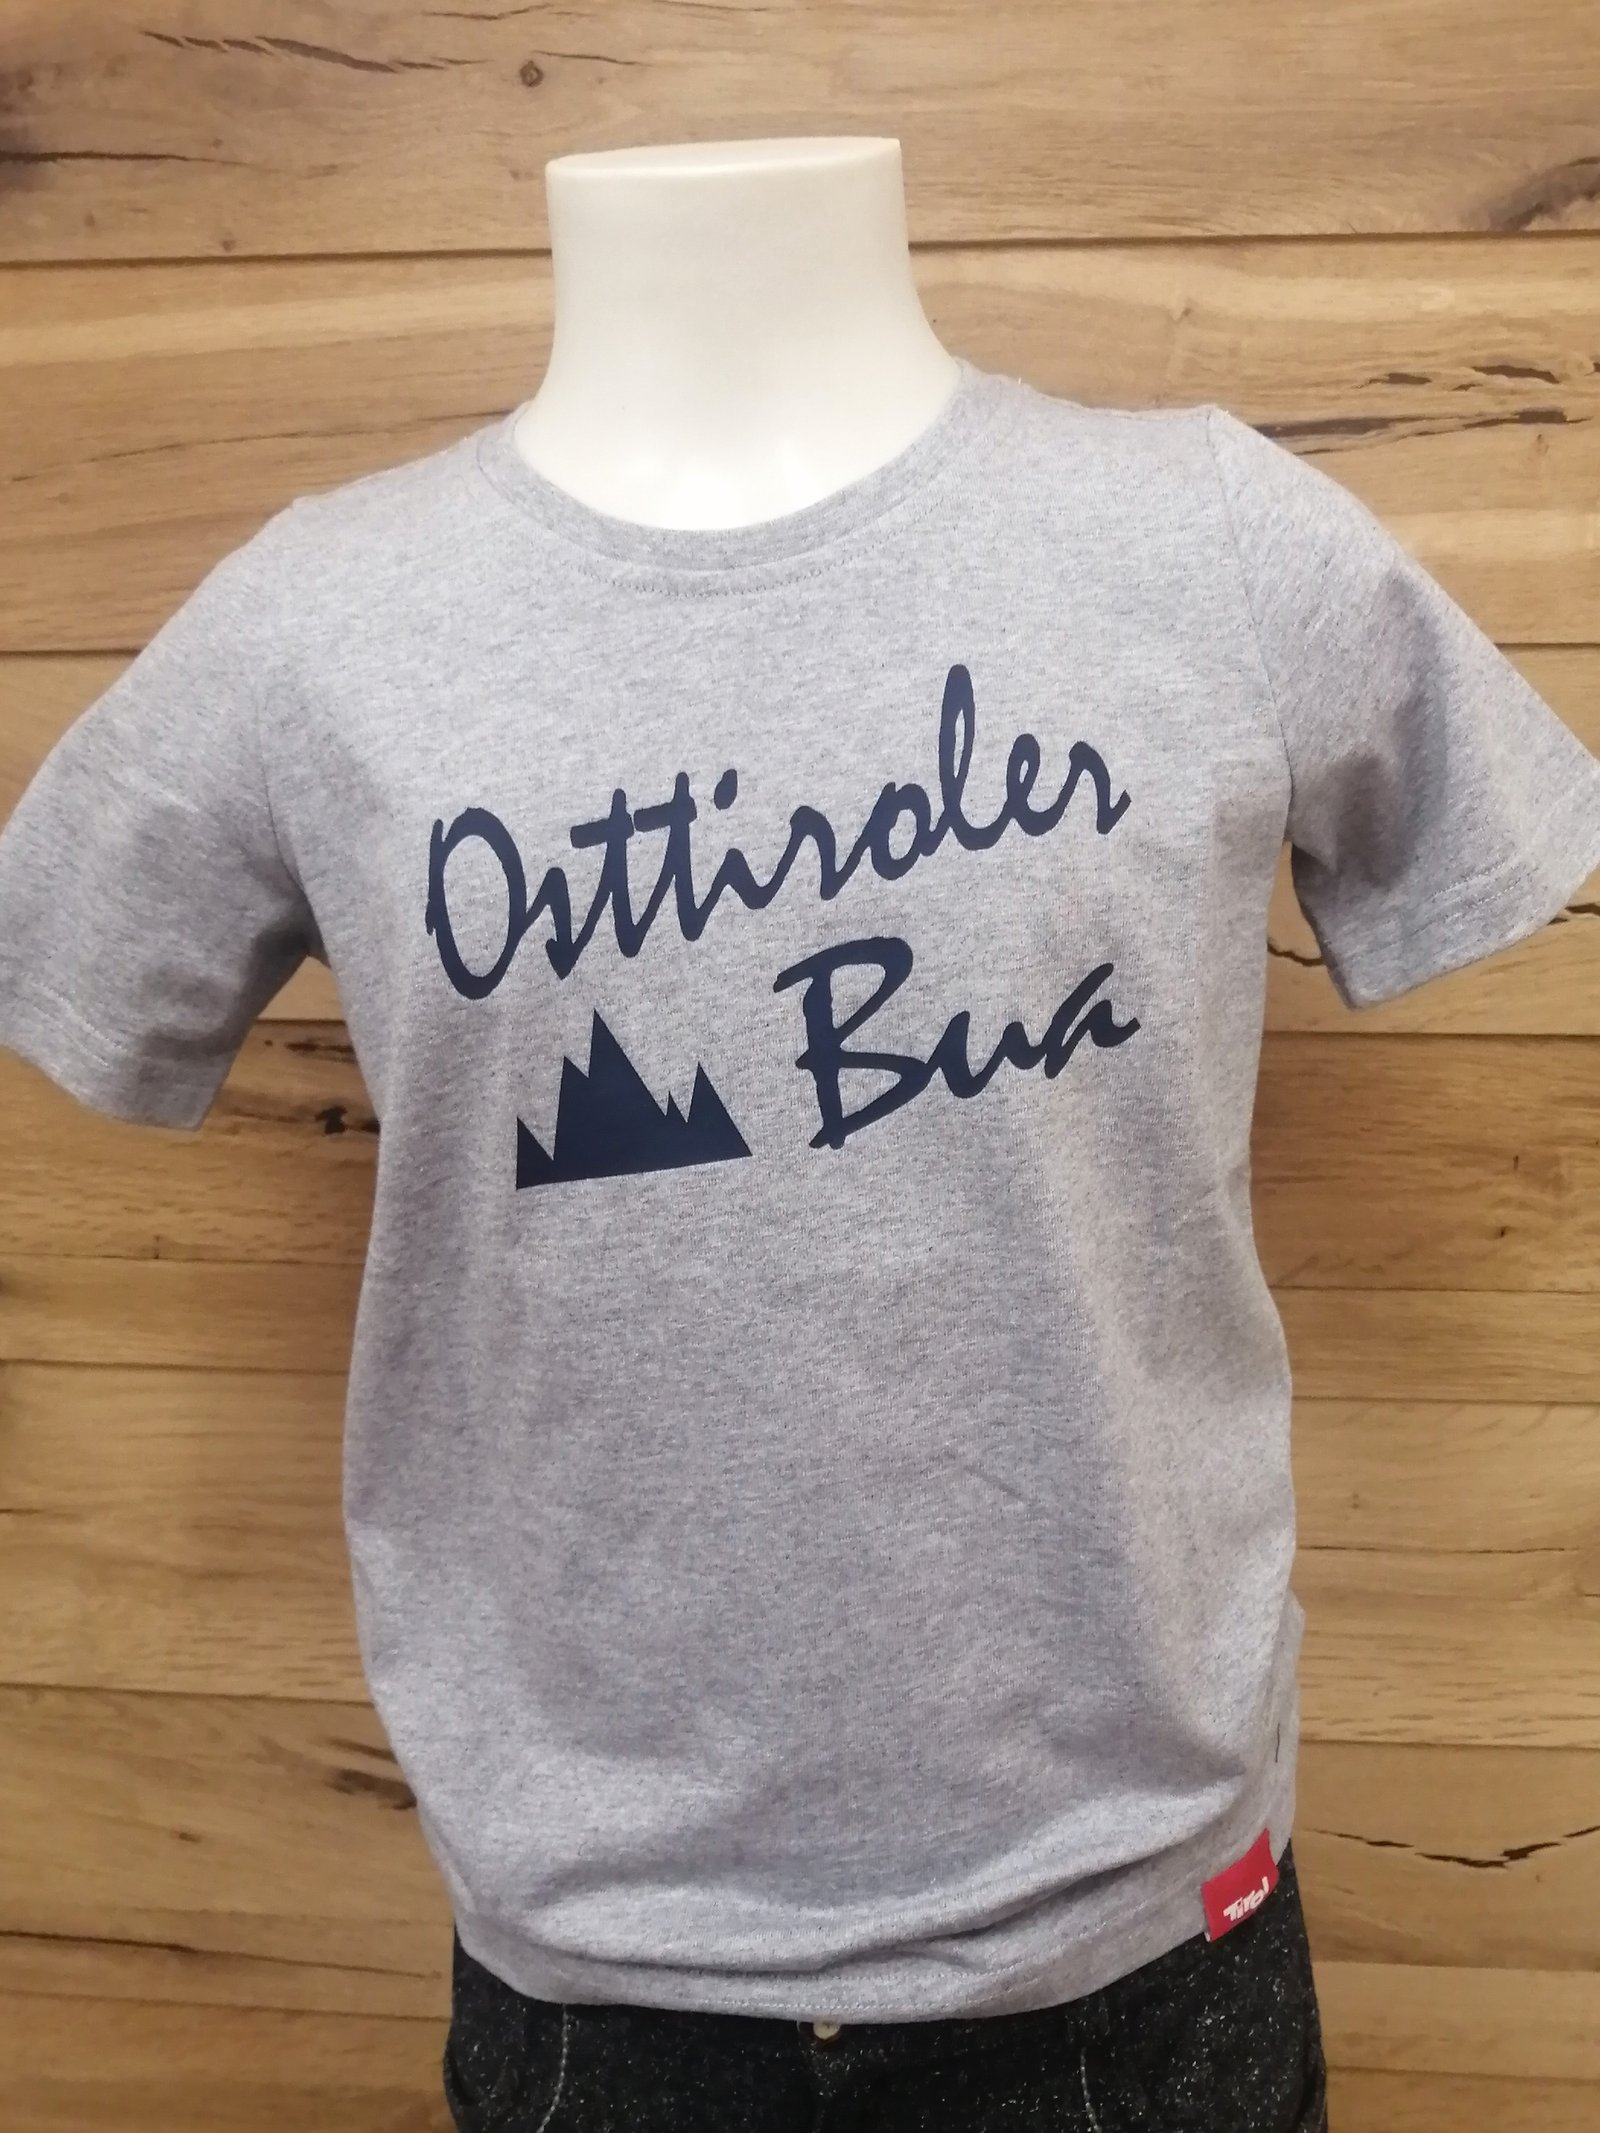 Kinder T- Shirt "Osttiroler Bua" grau